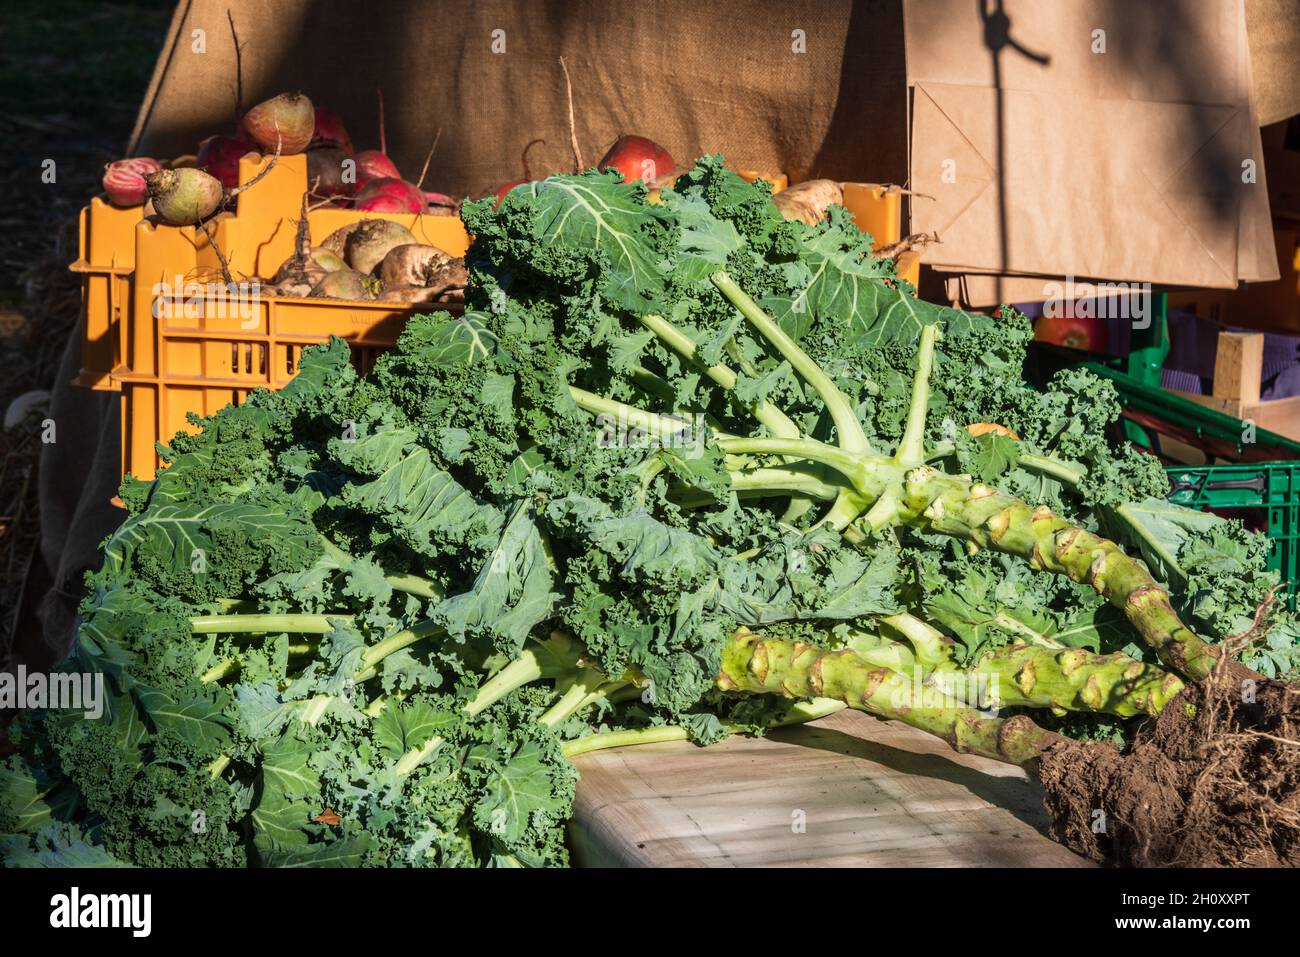 Grünkohl und herbsliches Gemüse auf einem Wochenmarkt Foto Stock